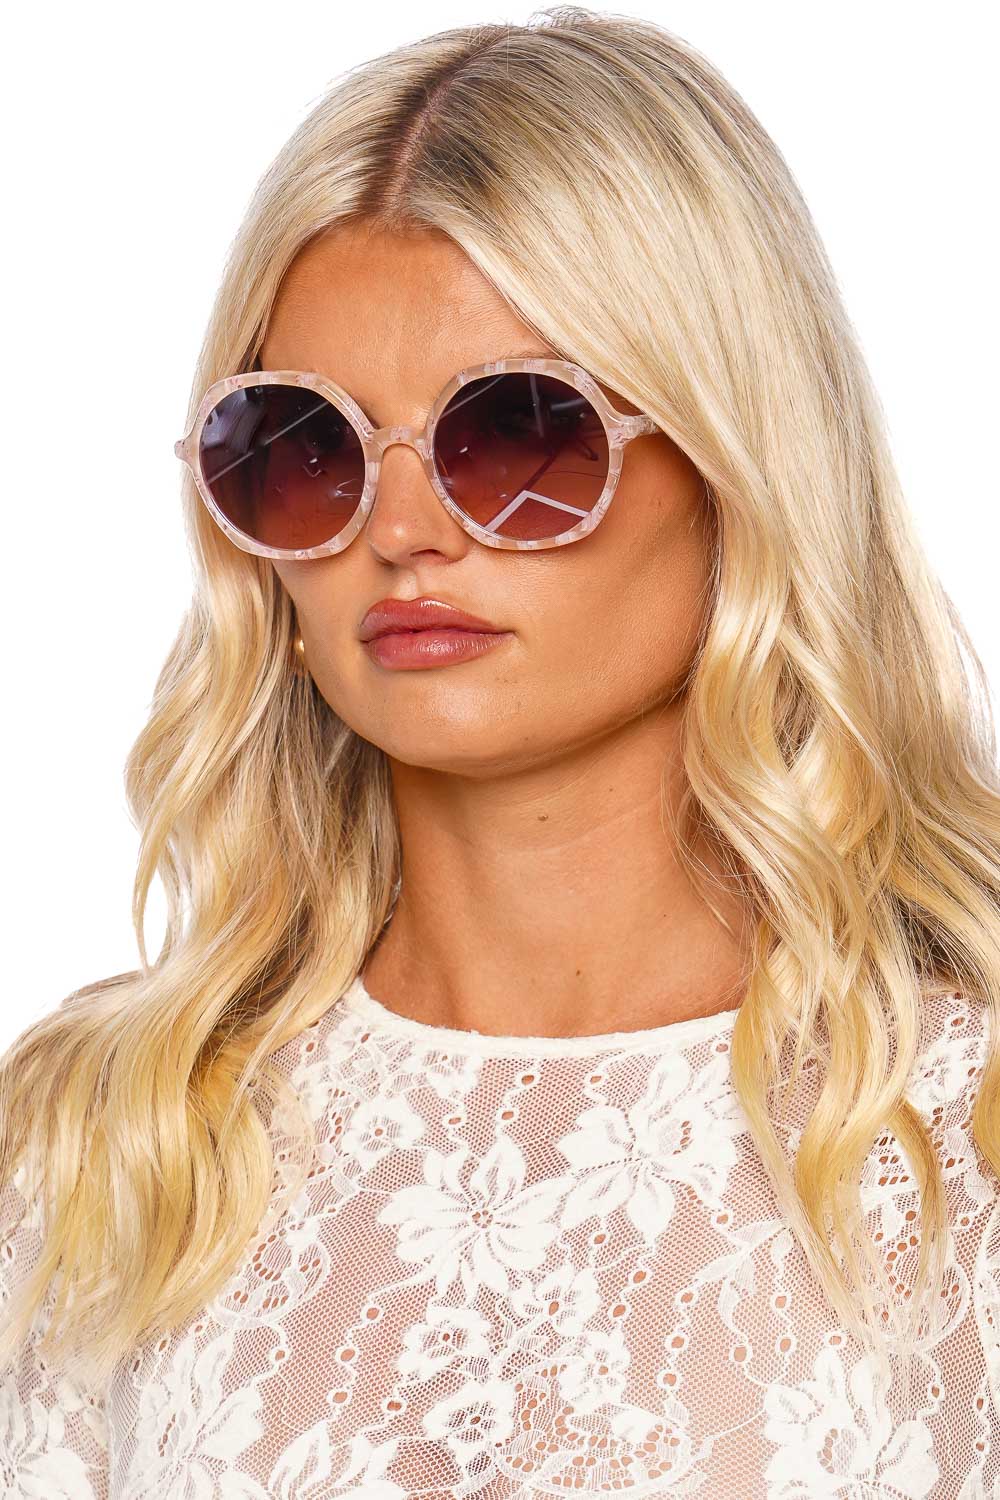 KREWE Sophia Plaid Mirrored Sunglasses